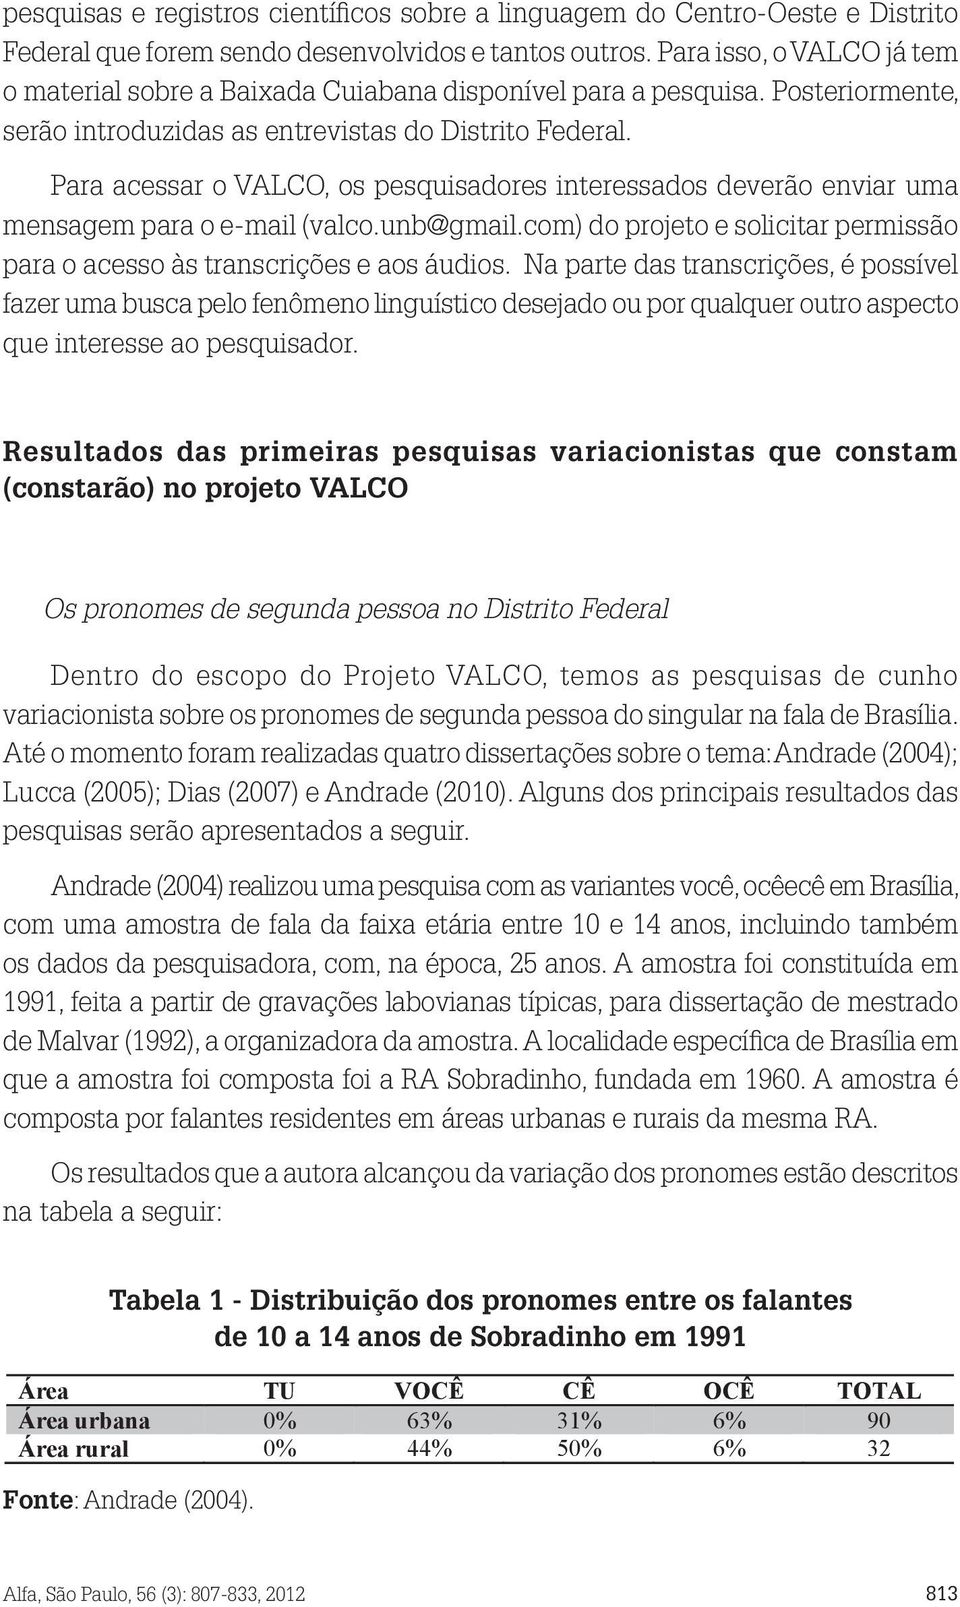 Para acessar o VALCO, os pesquisadores interessados deverão enviar uma mensagem para o e-mail (valco.unb@gmail.com) do projeto e solicitar permissão para o acesso às transcrições e aos áudios.